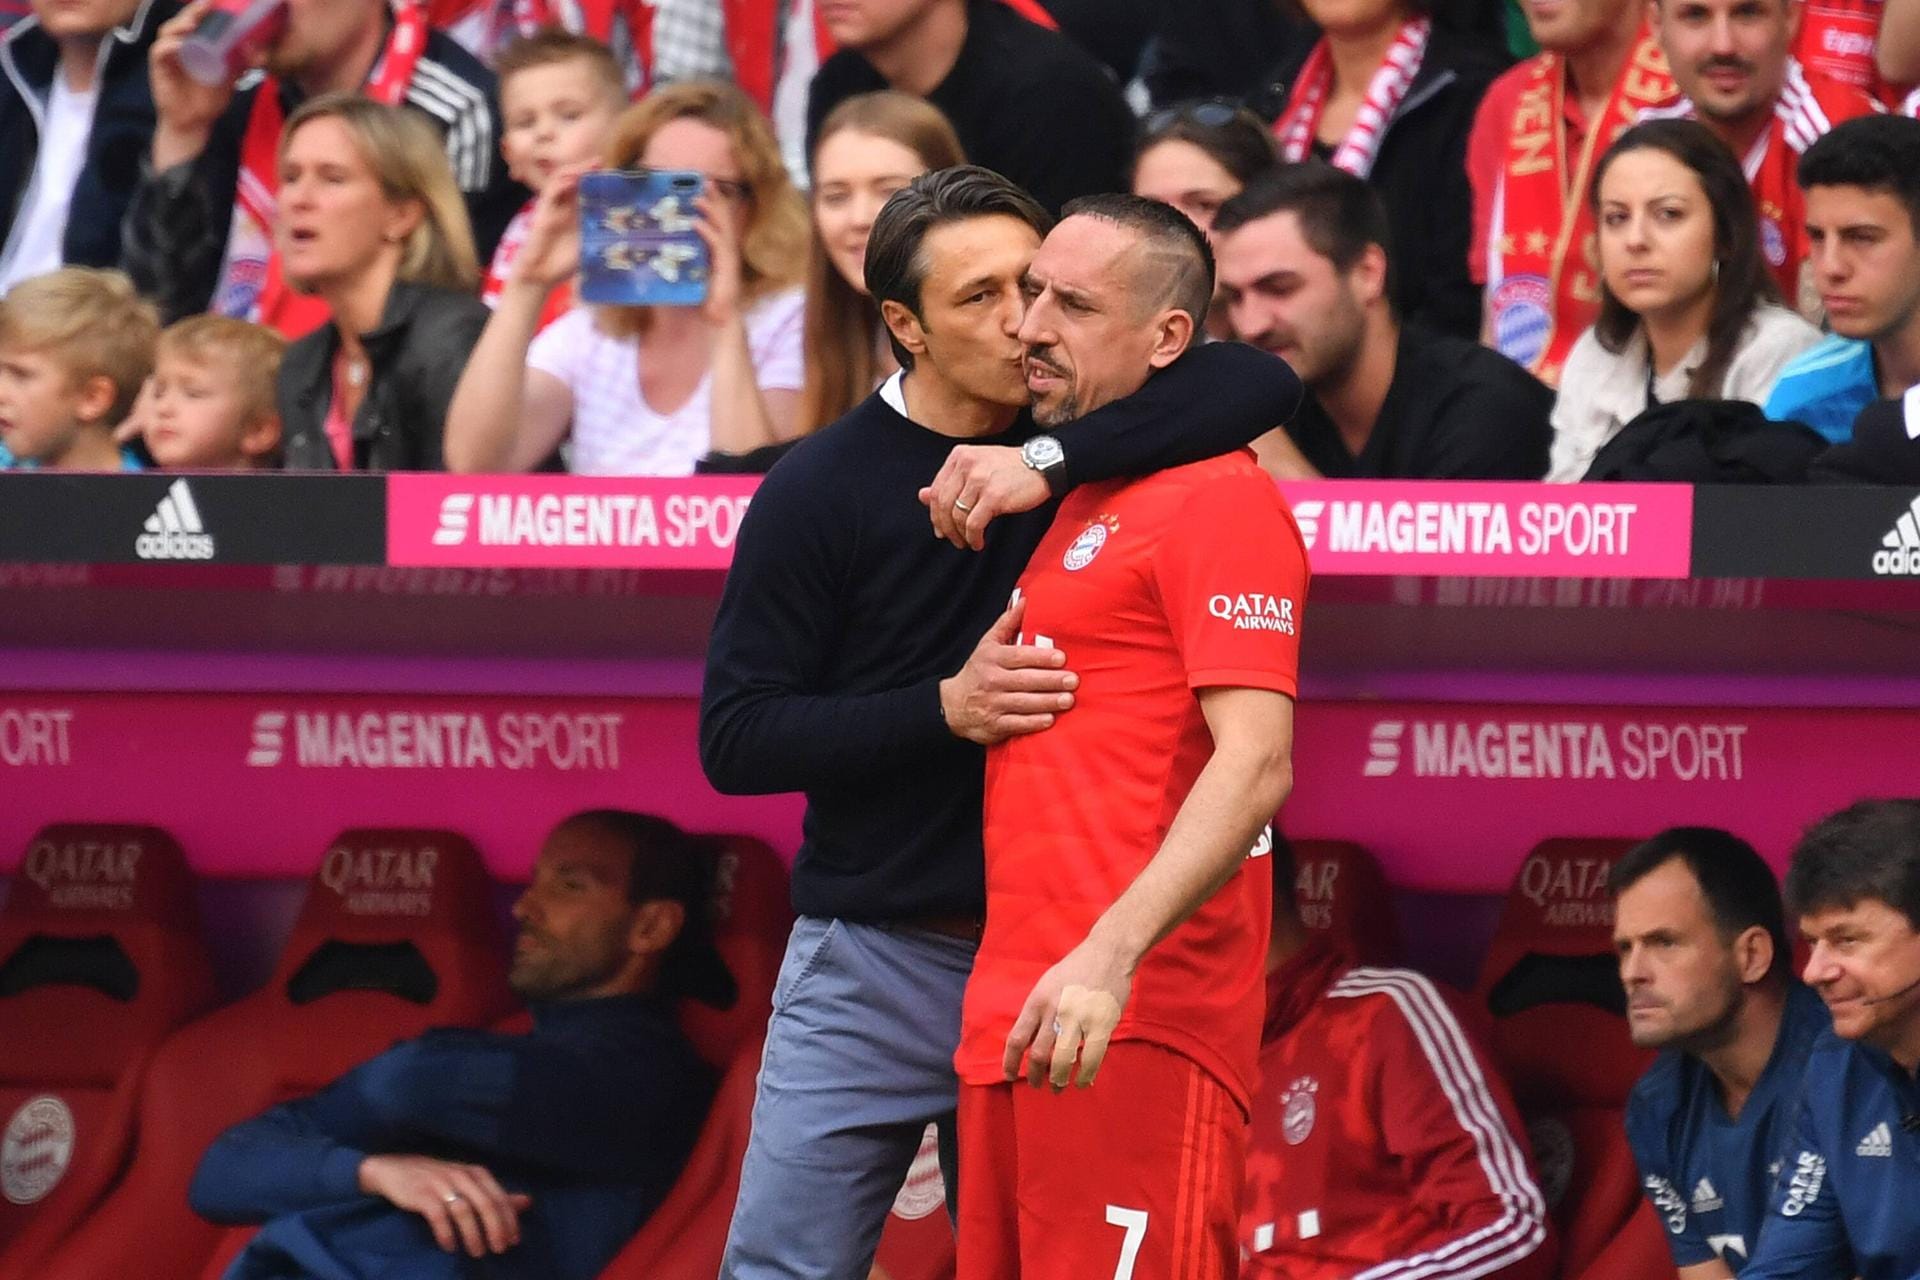 Torschütze Franck Ribéry (r.) zu Trainer Niko Kovac: "Natürlich war es ab und zu schwer. Ein Trainer bracht aber Zeit. Er ist ein guter Mensch. Ich hoffe, er bleibt bei Bayern."